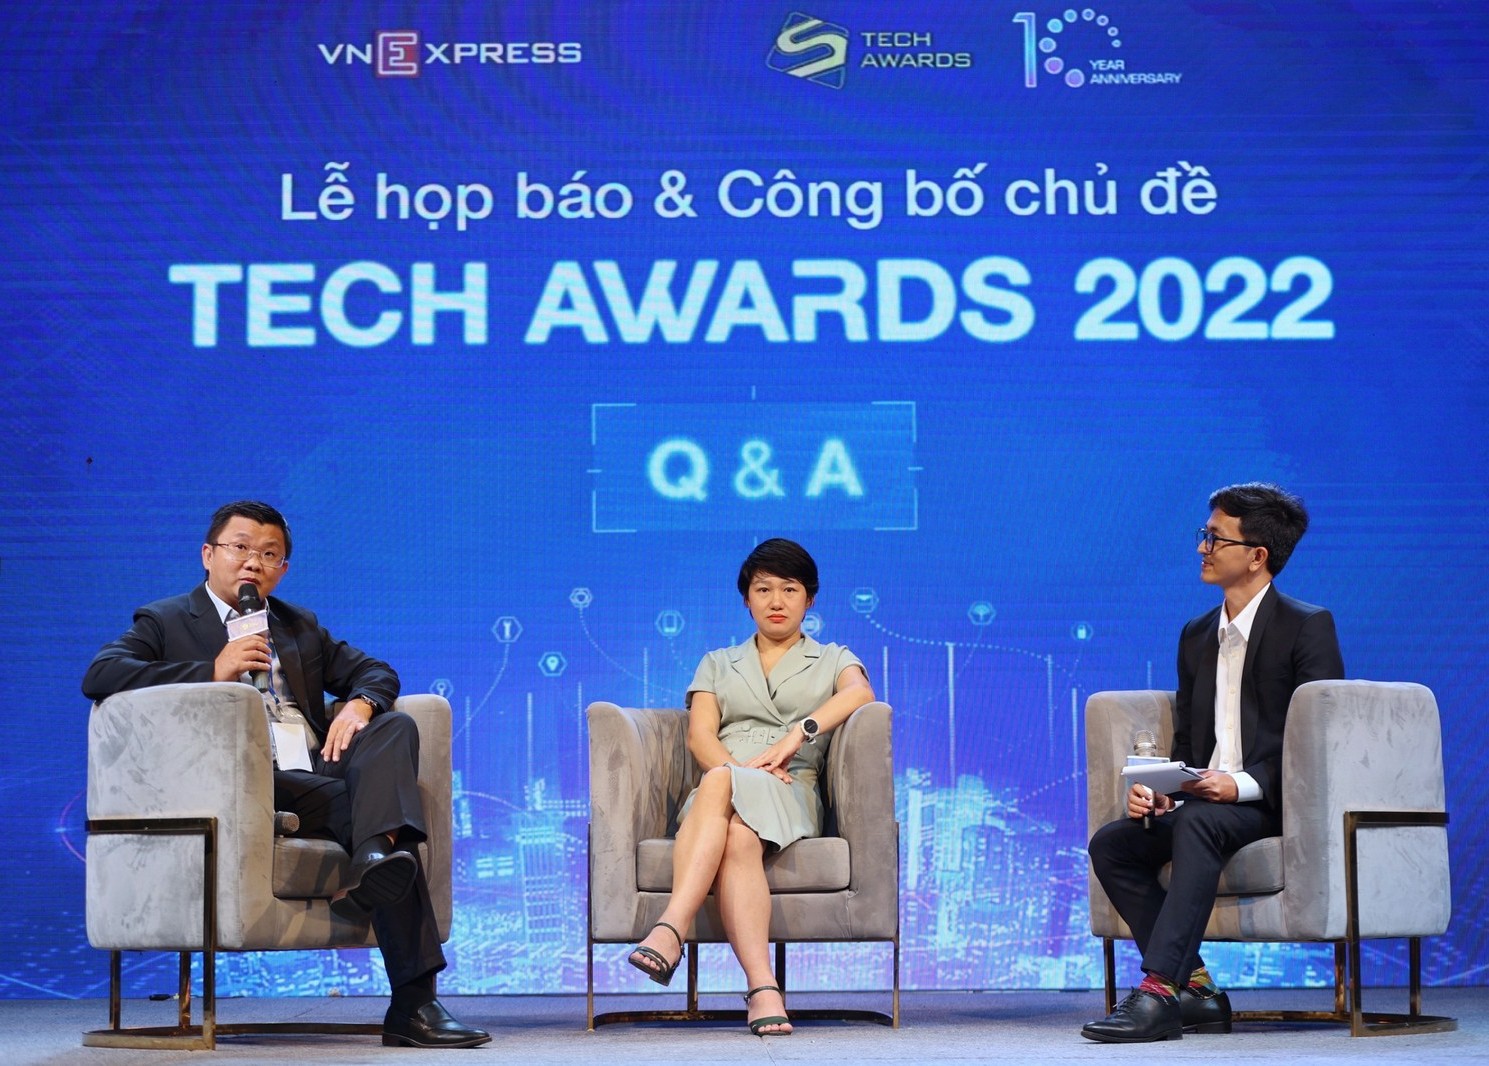 Tech Awards 2022 quy tụ hơn 60 sản phẩm và hơn 40 thương hiệu được đề cử